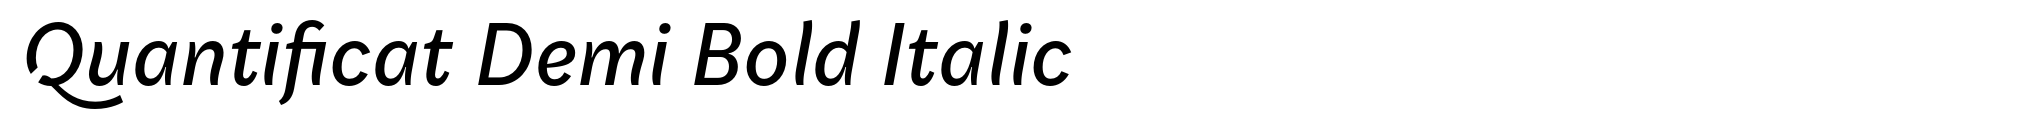 Quantificat Demi Bold Italic image